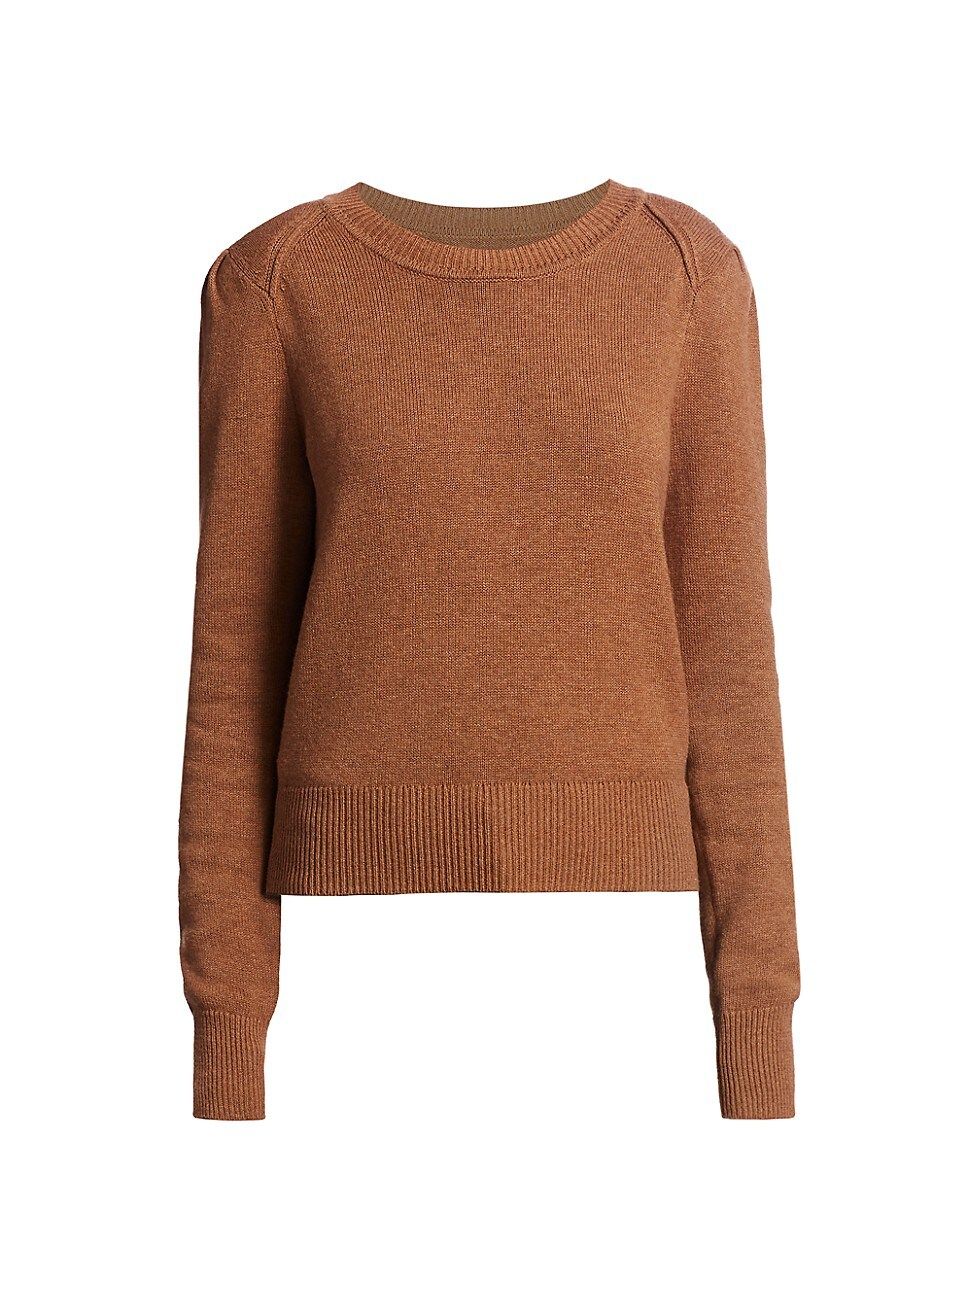 Isabel Marant Etoile Women's Kleely Wool-Blend Sweater - Camel - Size 40 (8) | Saks Fifth Avenue